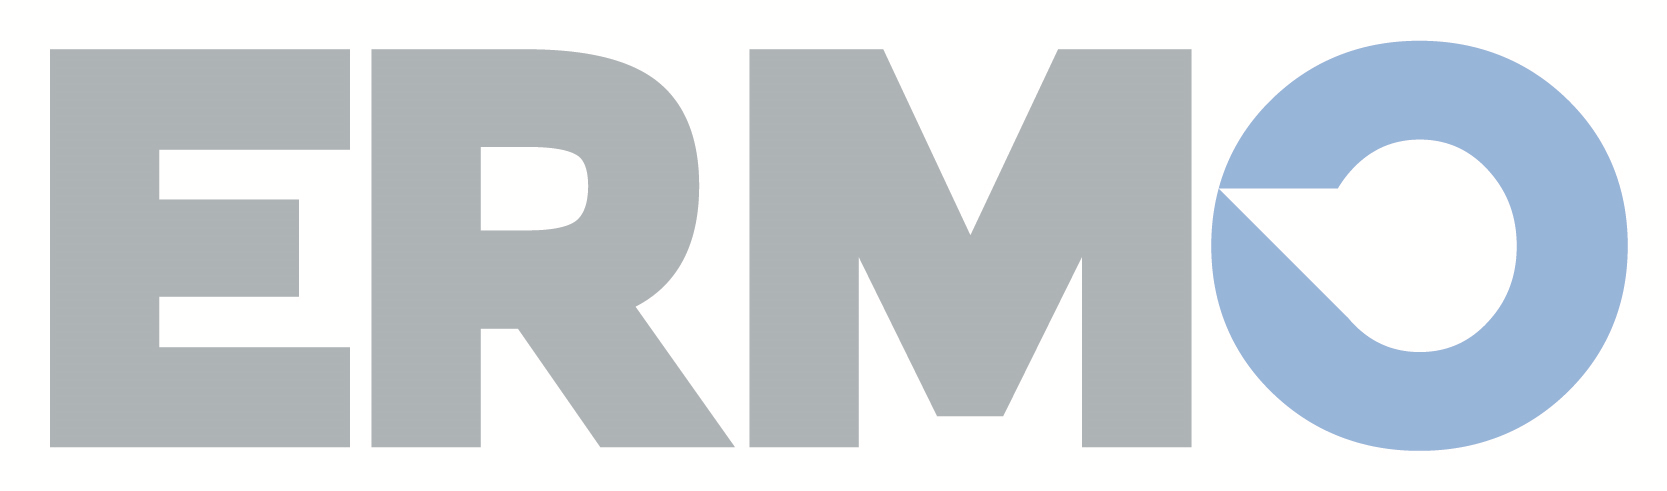 ERMO 2018 petit logo